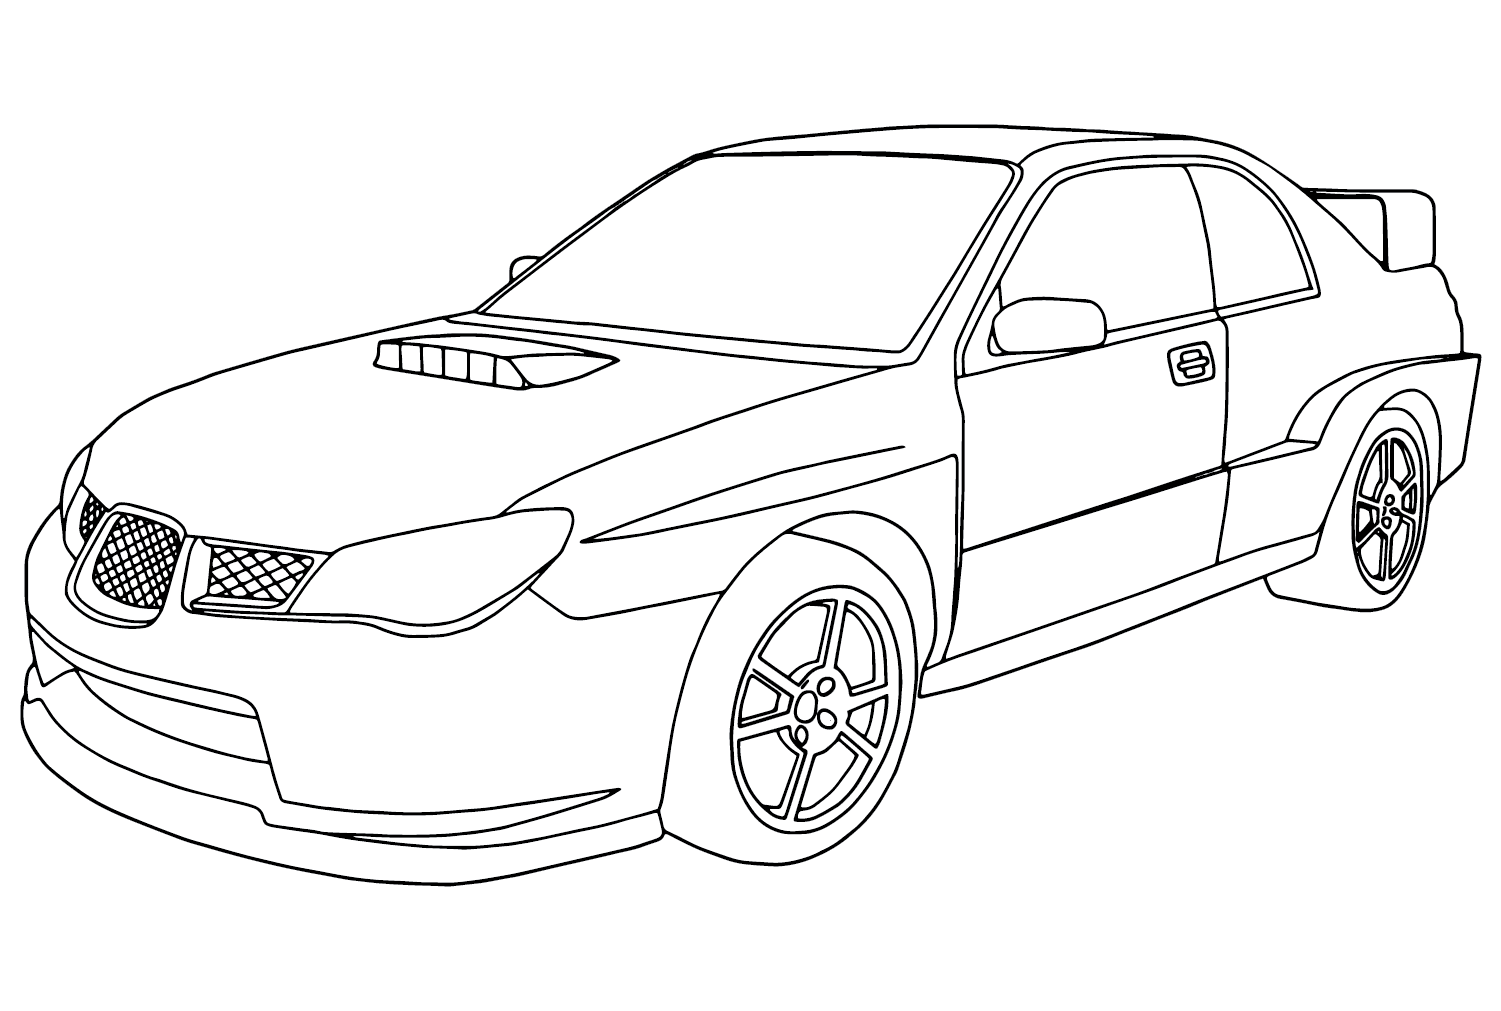 Subaru WRX STI Coloring Page from Subaru